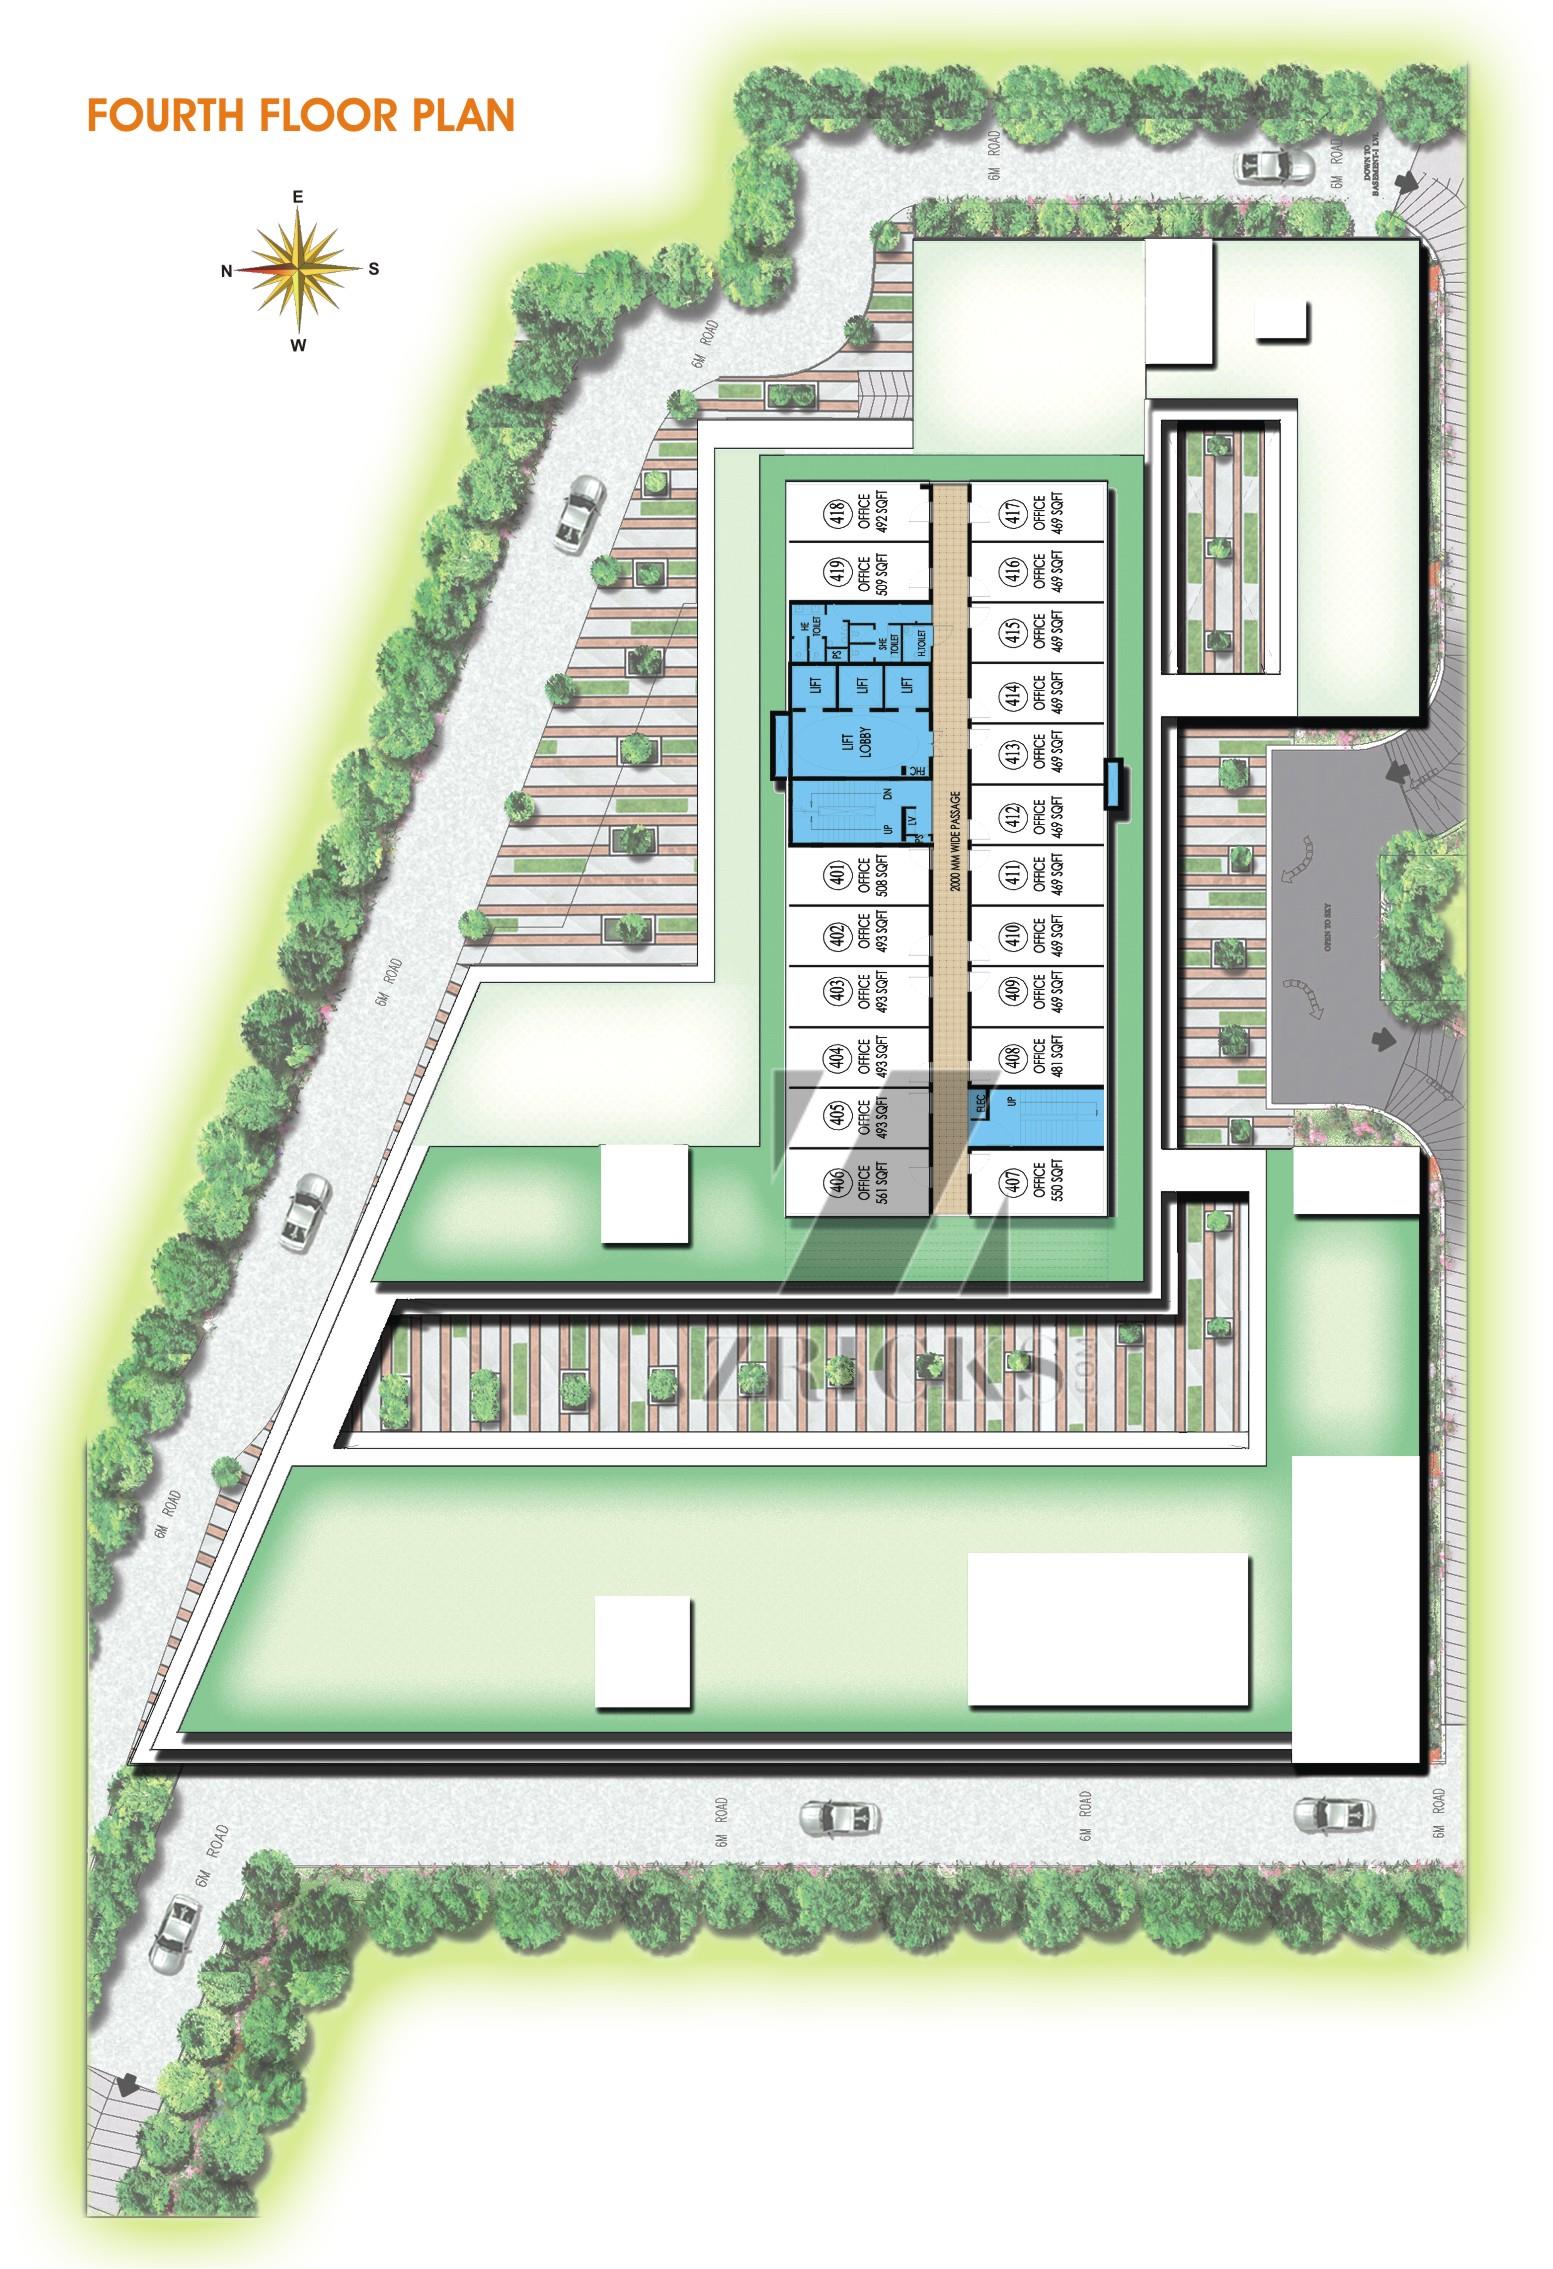 Ansals Town Walk Floor Plan